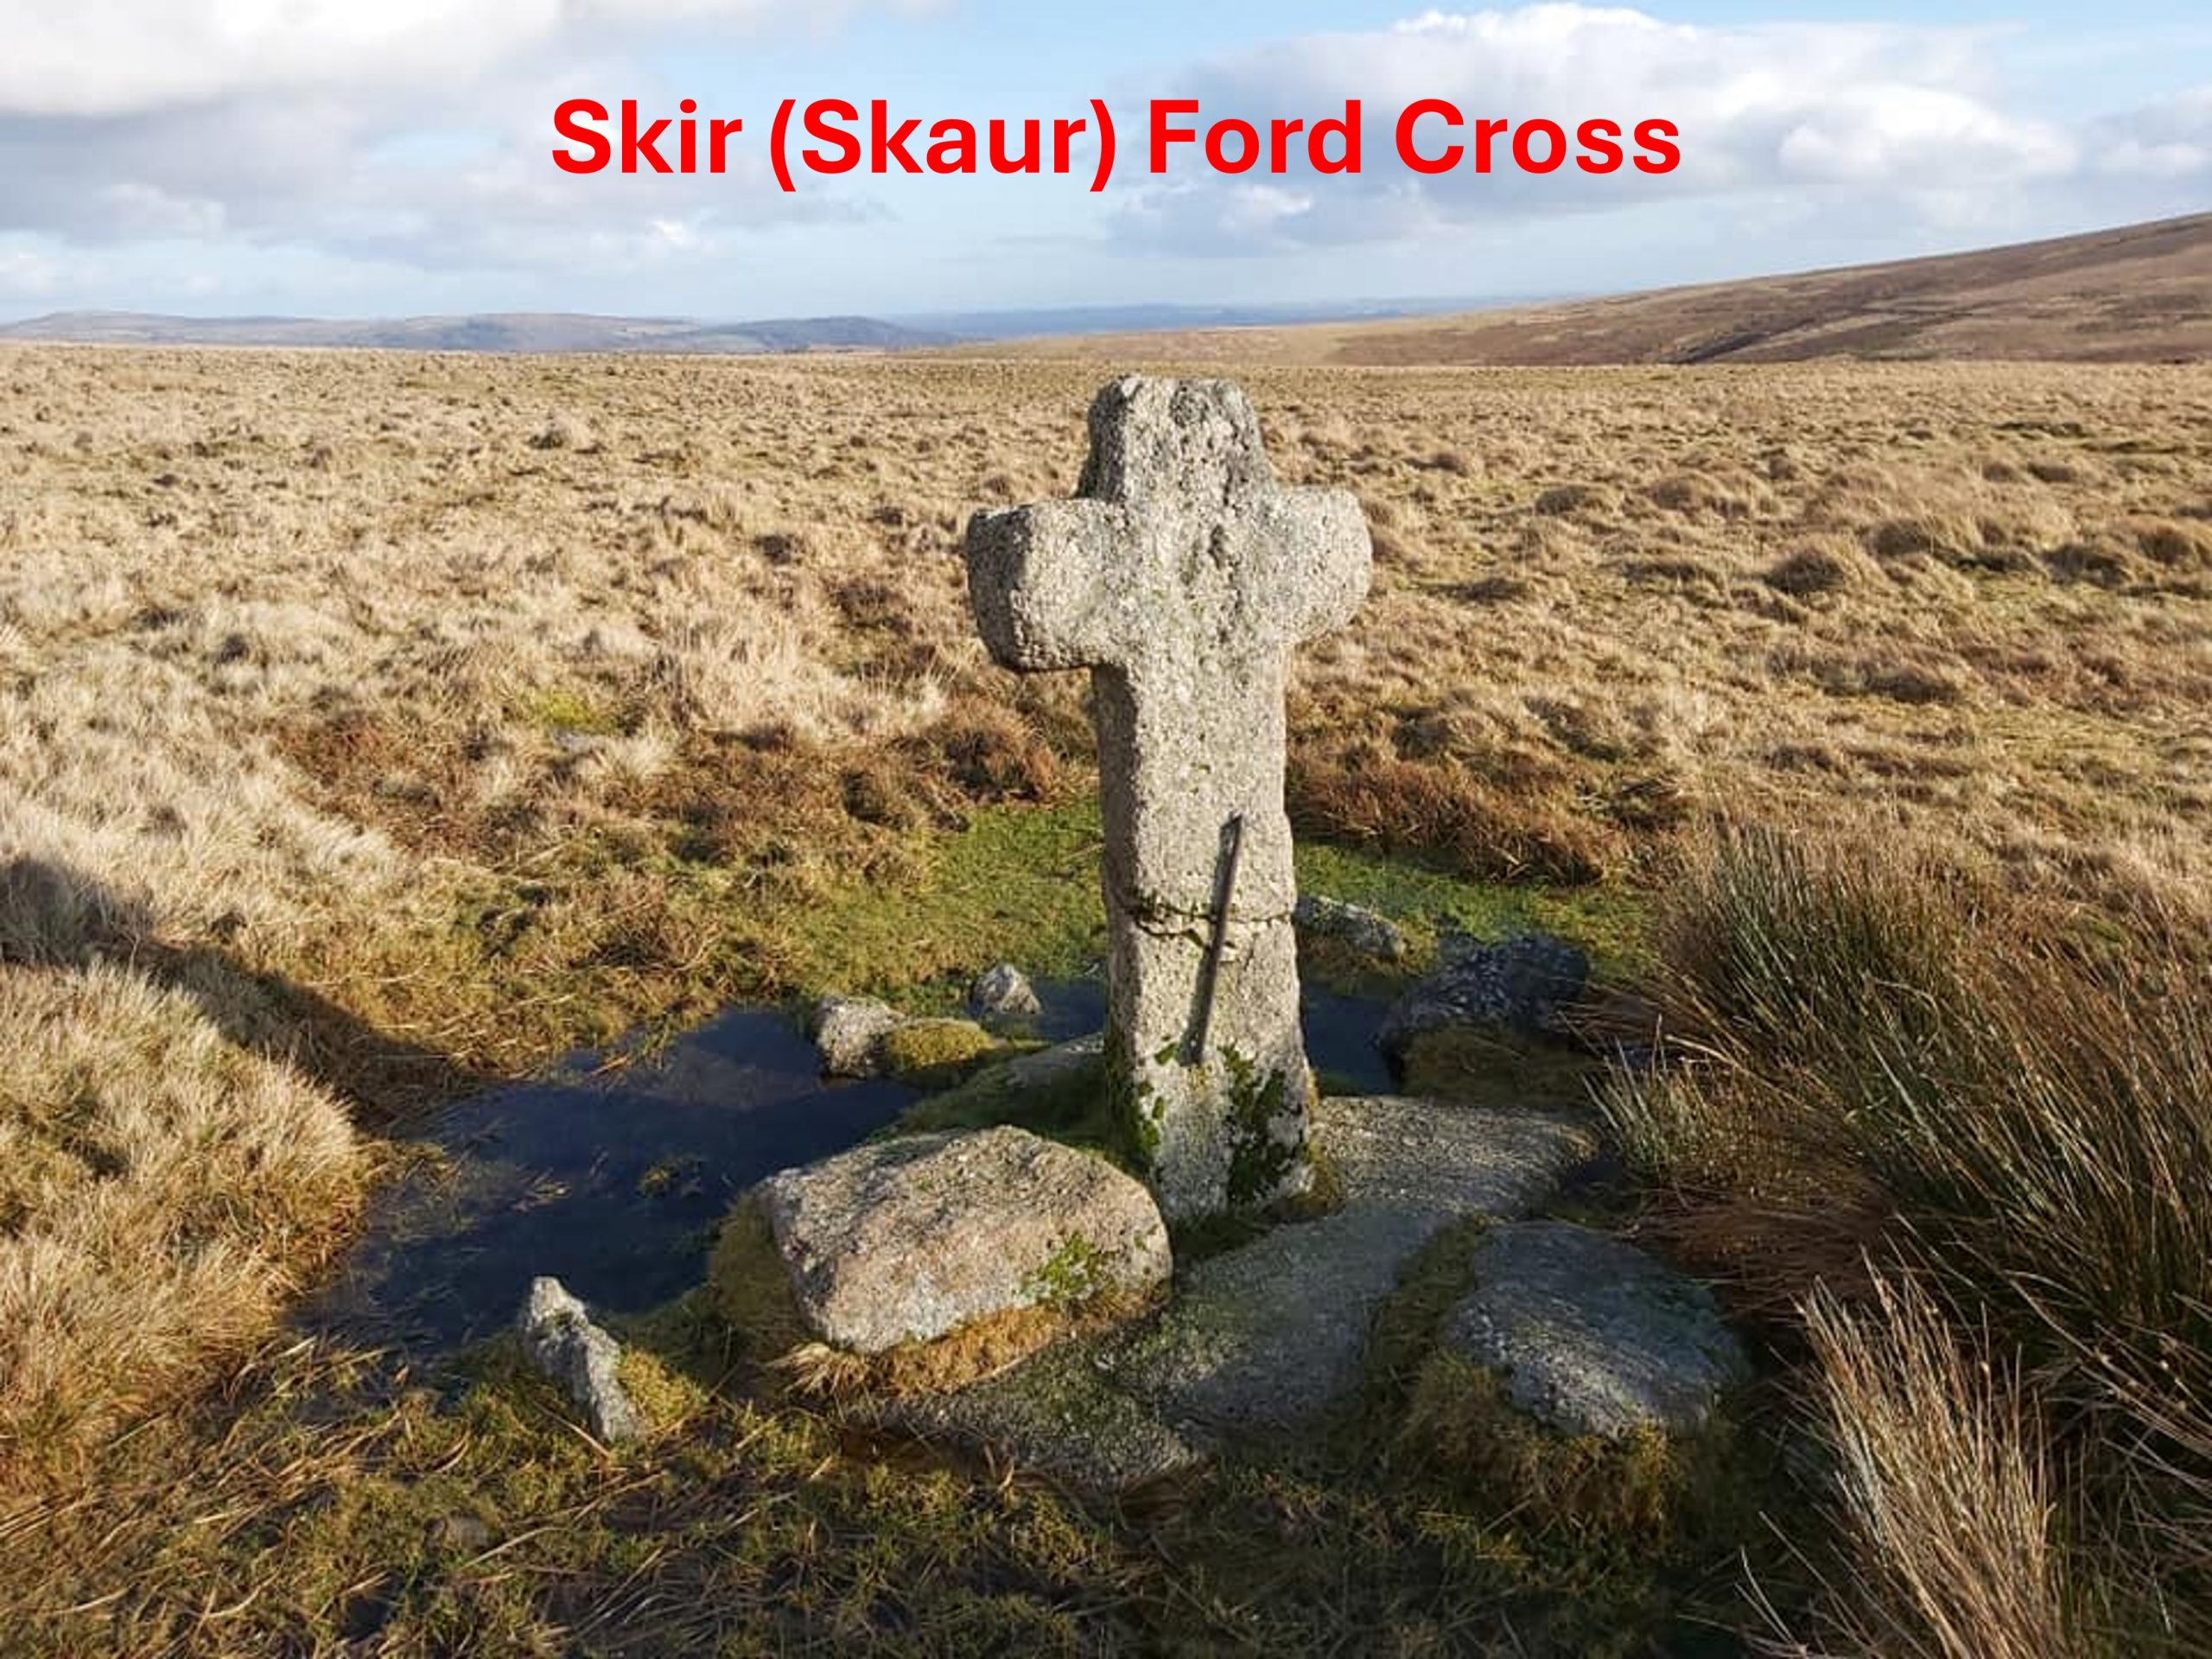 4. Skir Ford Cross